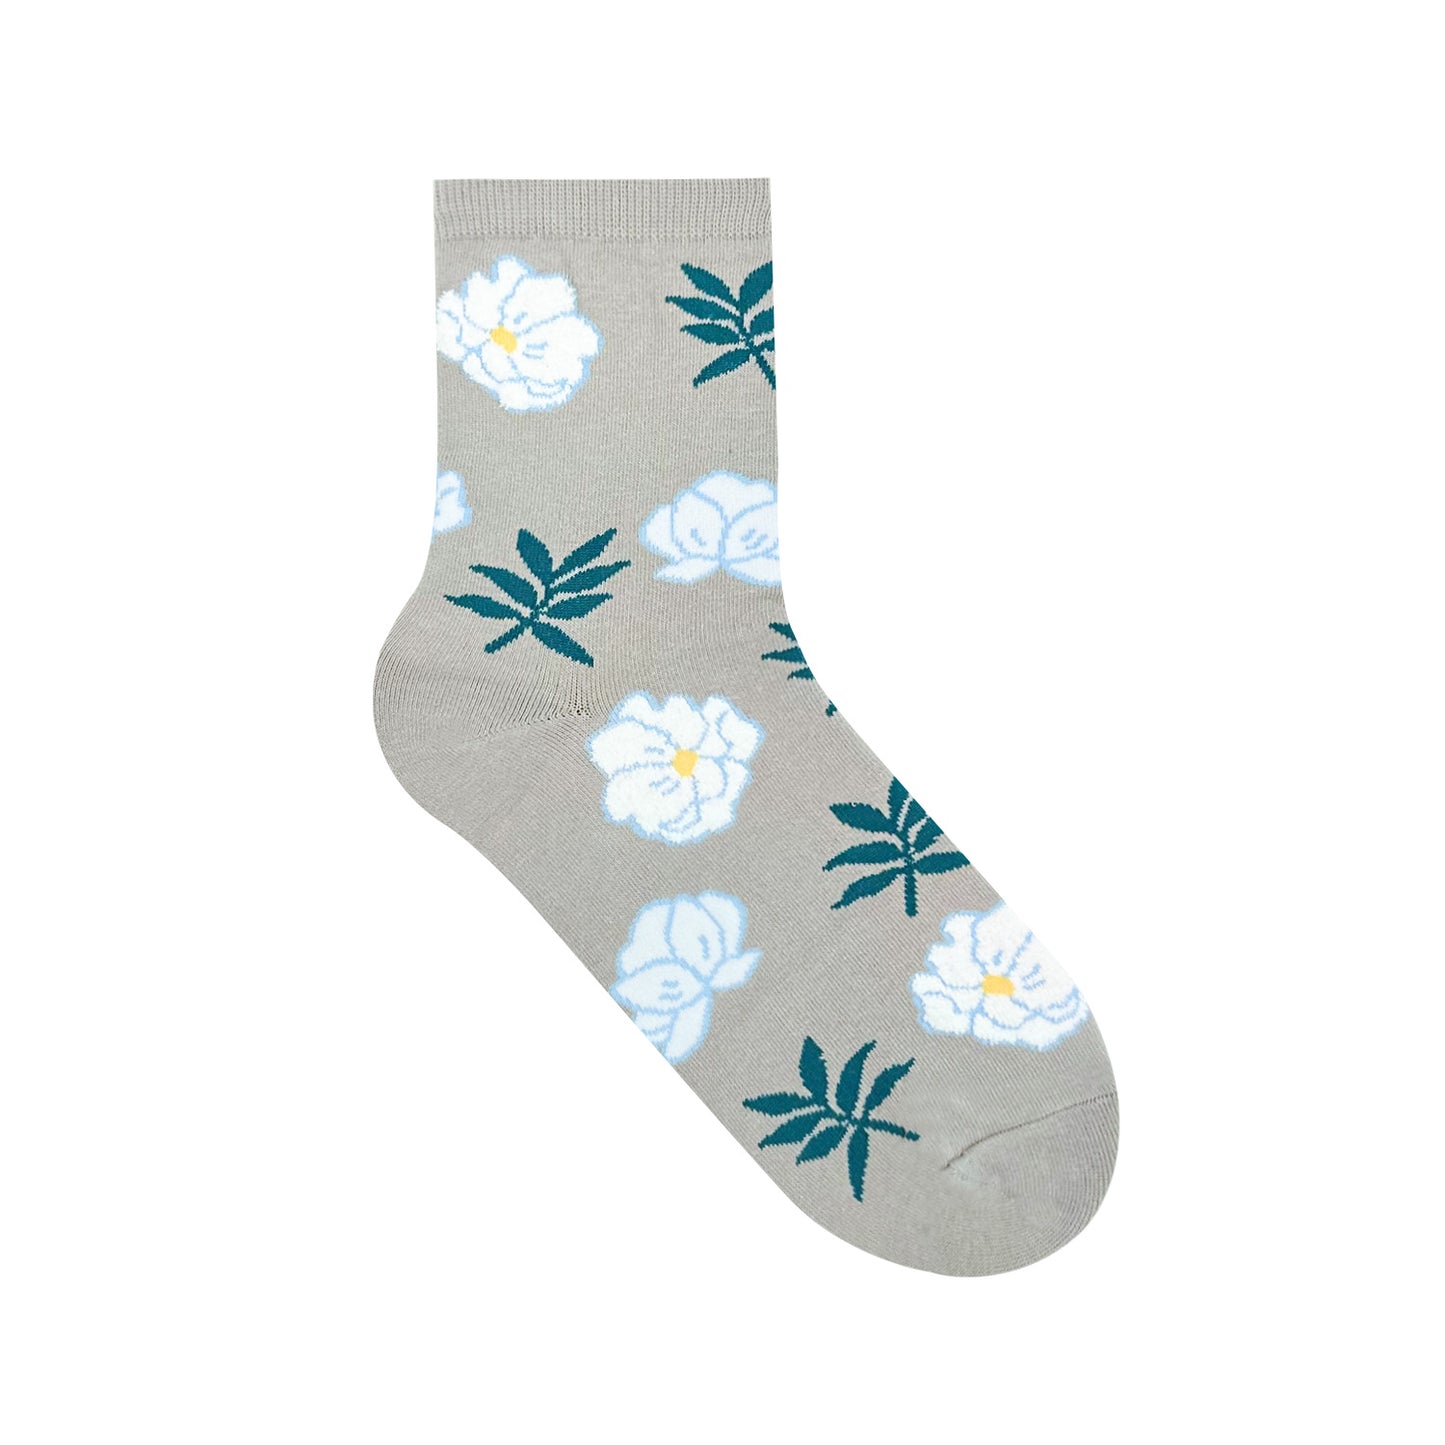 Women's Crew Romantic Garden Socks